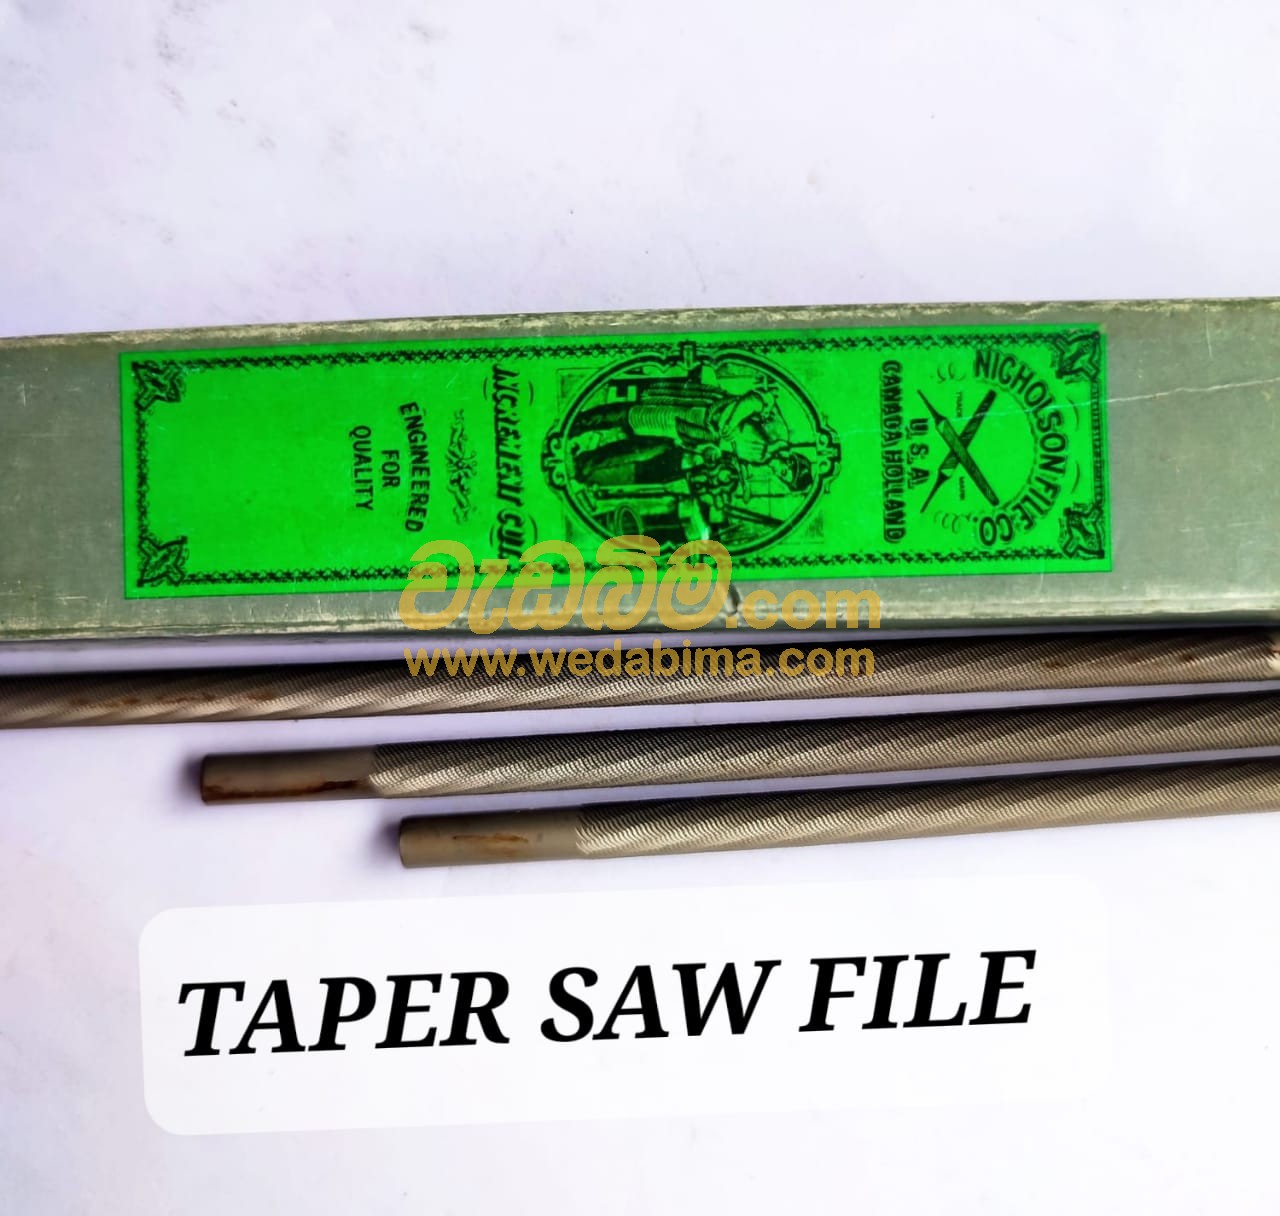 taper saw file price in sri lanka